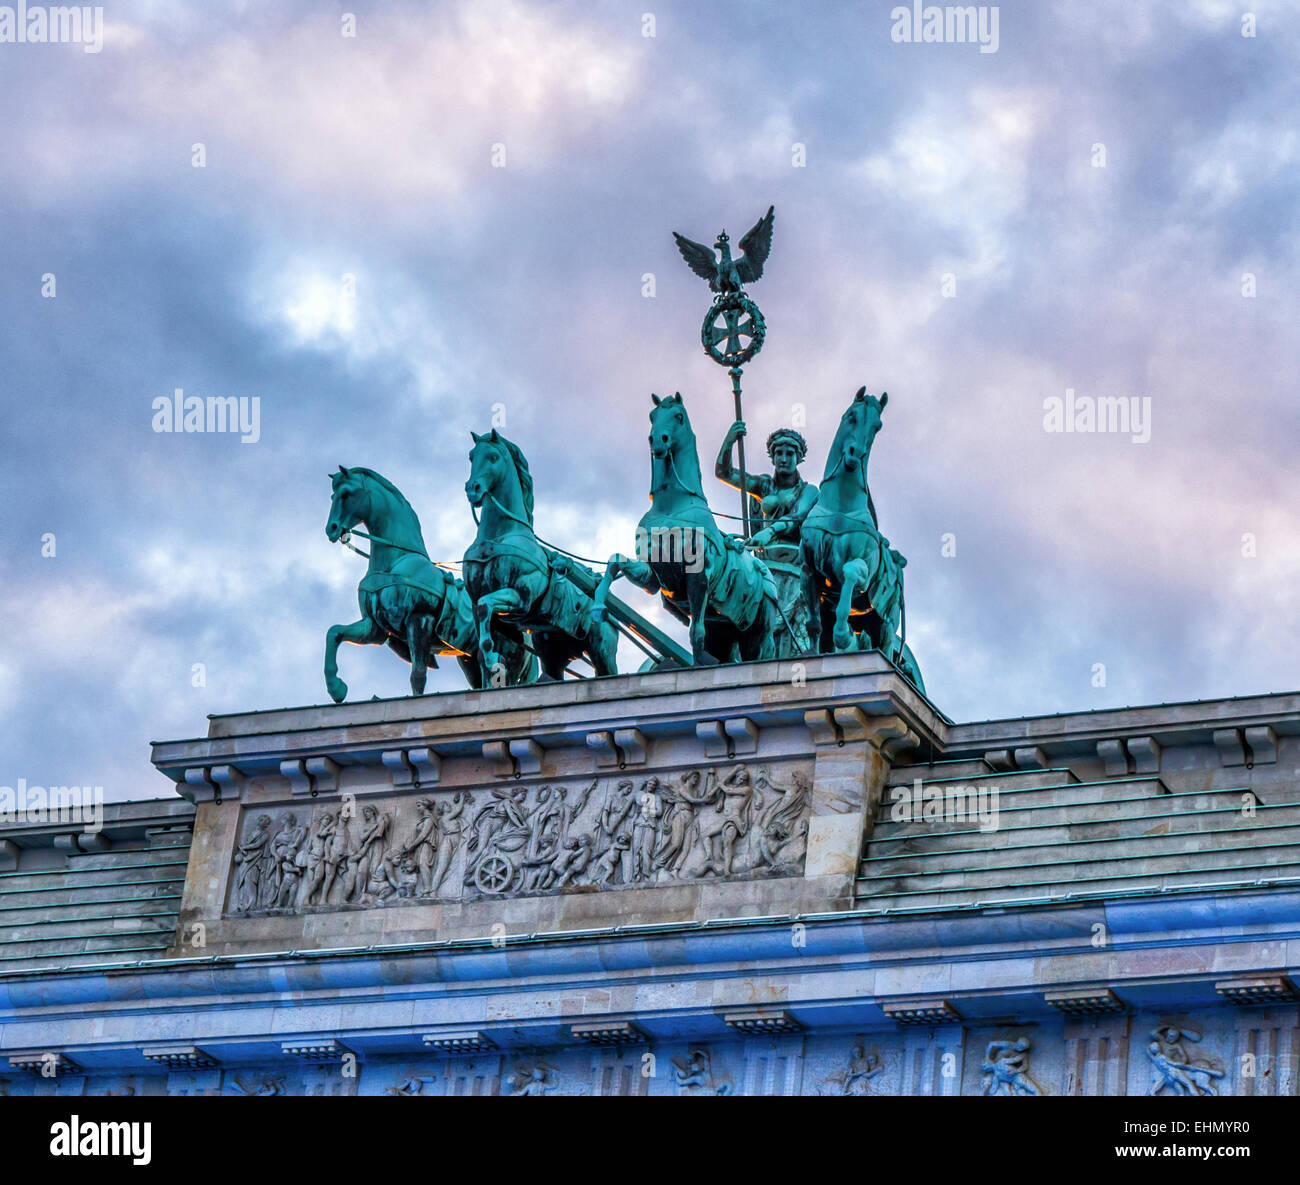 Puerta de Brandenburgo, Brandenburger Tor. El carro y la diosa de la escultura de la paz encabeza el arco triunfal neoclásico del siglo XVIII en Pariser Platz,Mitte,Berlín Foto de stock